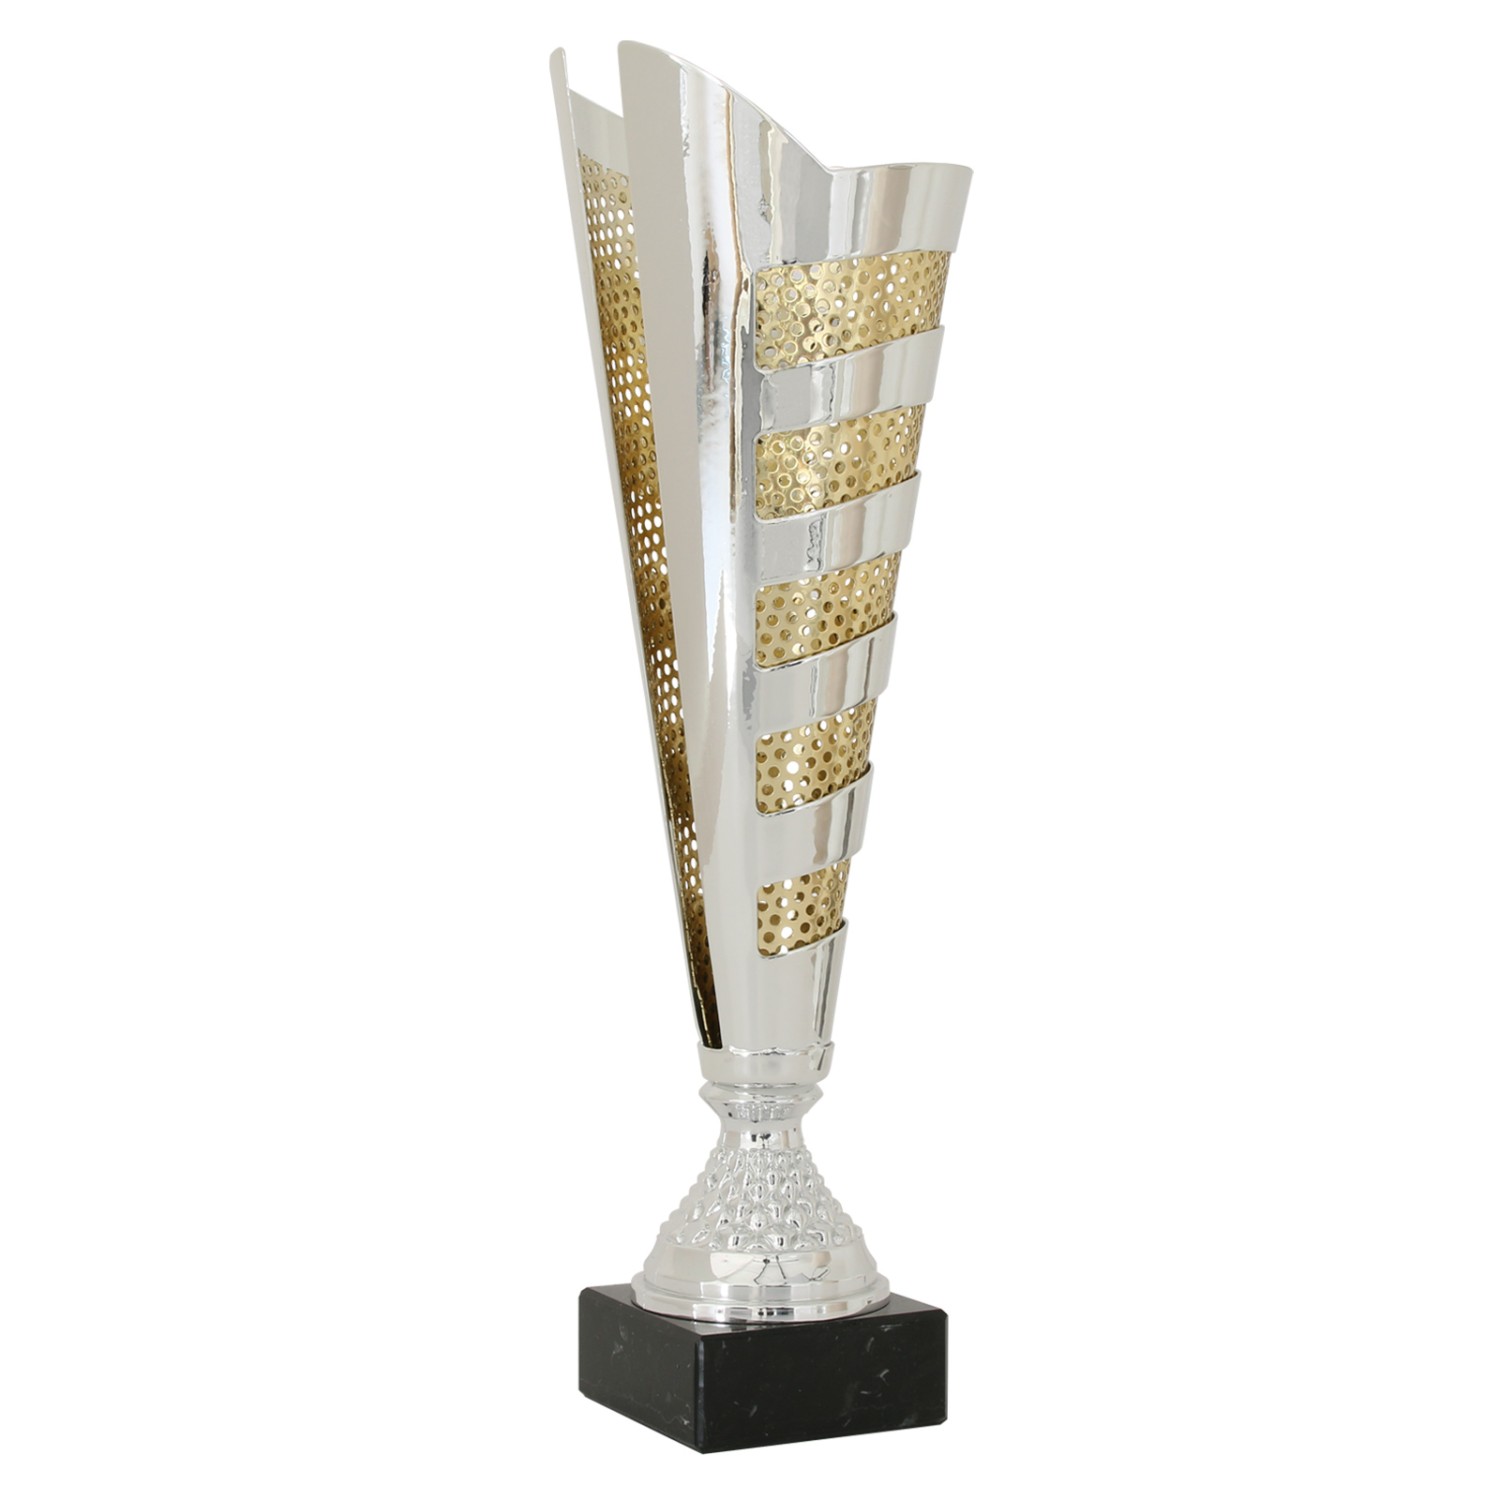 1. Foto Pokal Pokalset CLUNY Metall silber gold 3 Größen mit Gravur (Größe: Größe M 39,5 cm)